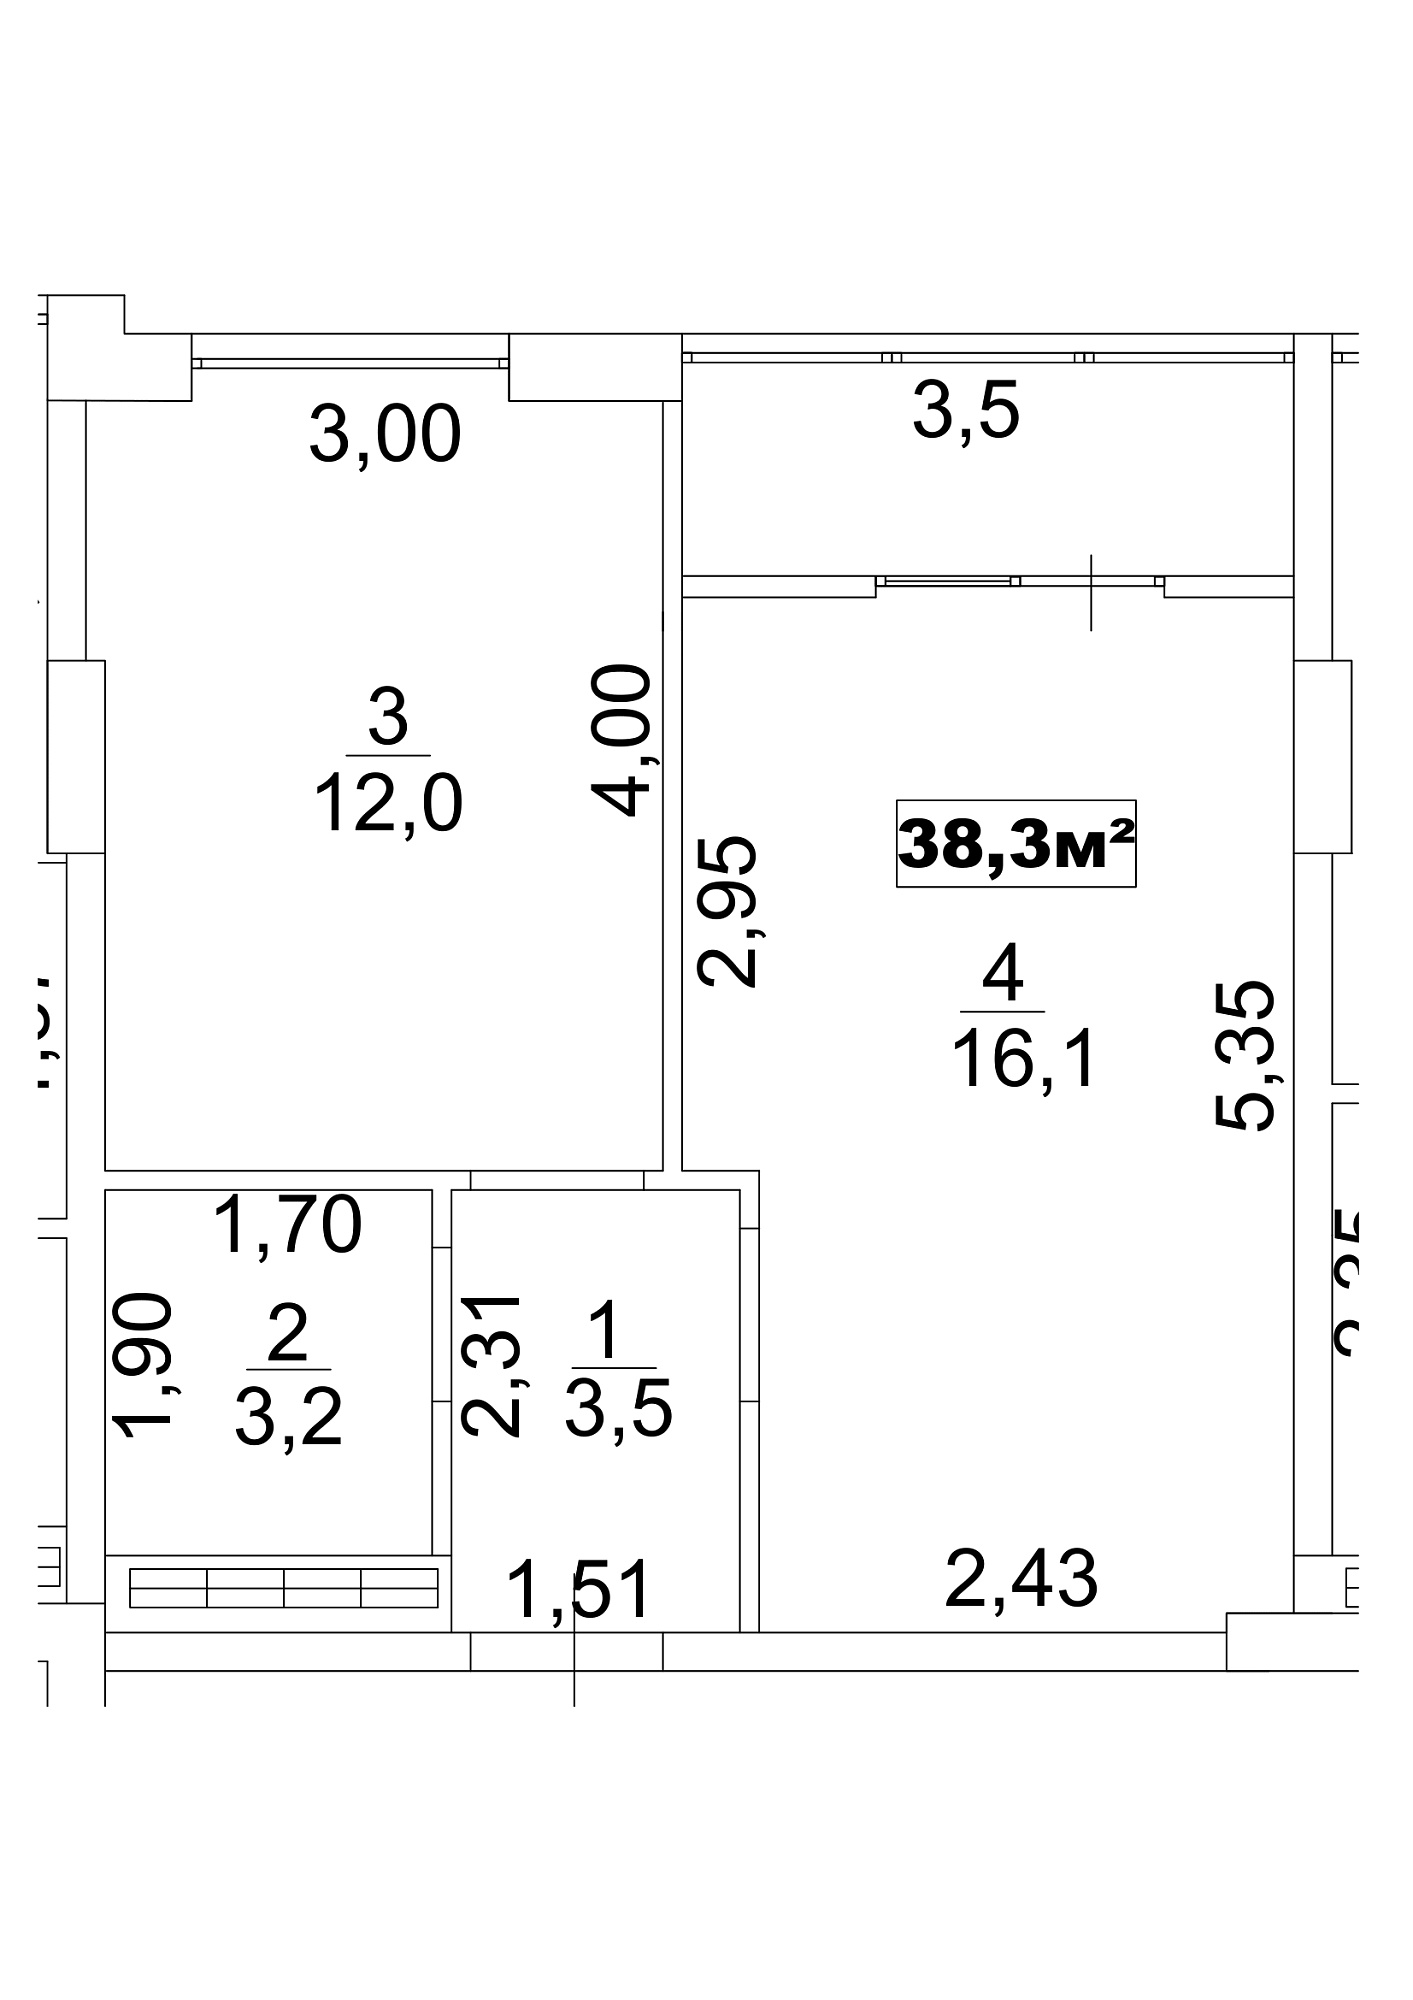 Планировка 1-к квартира площей 38.3м2, AB-13-09/00075.